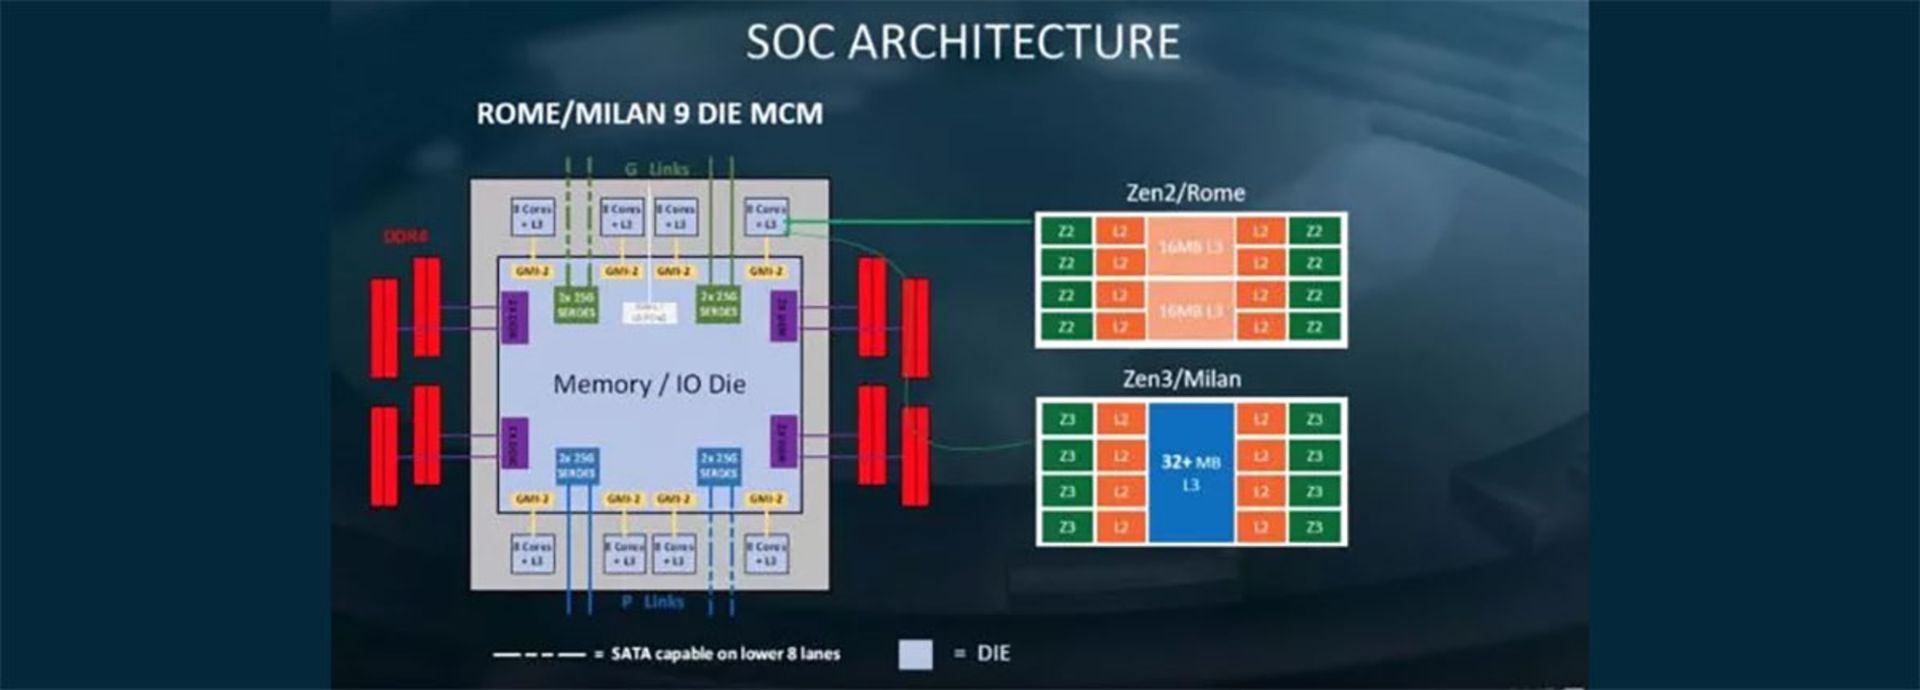 مرجع متخصصين ايران معماري SOC پردازنده‌هاي سرور رم و ميلان